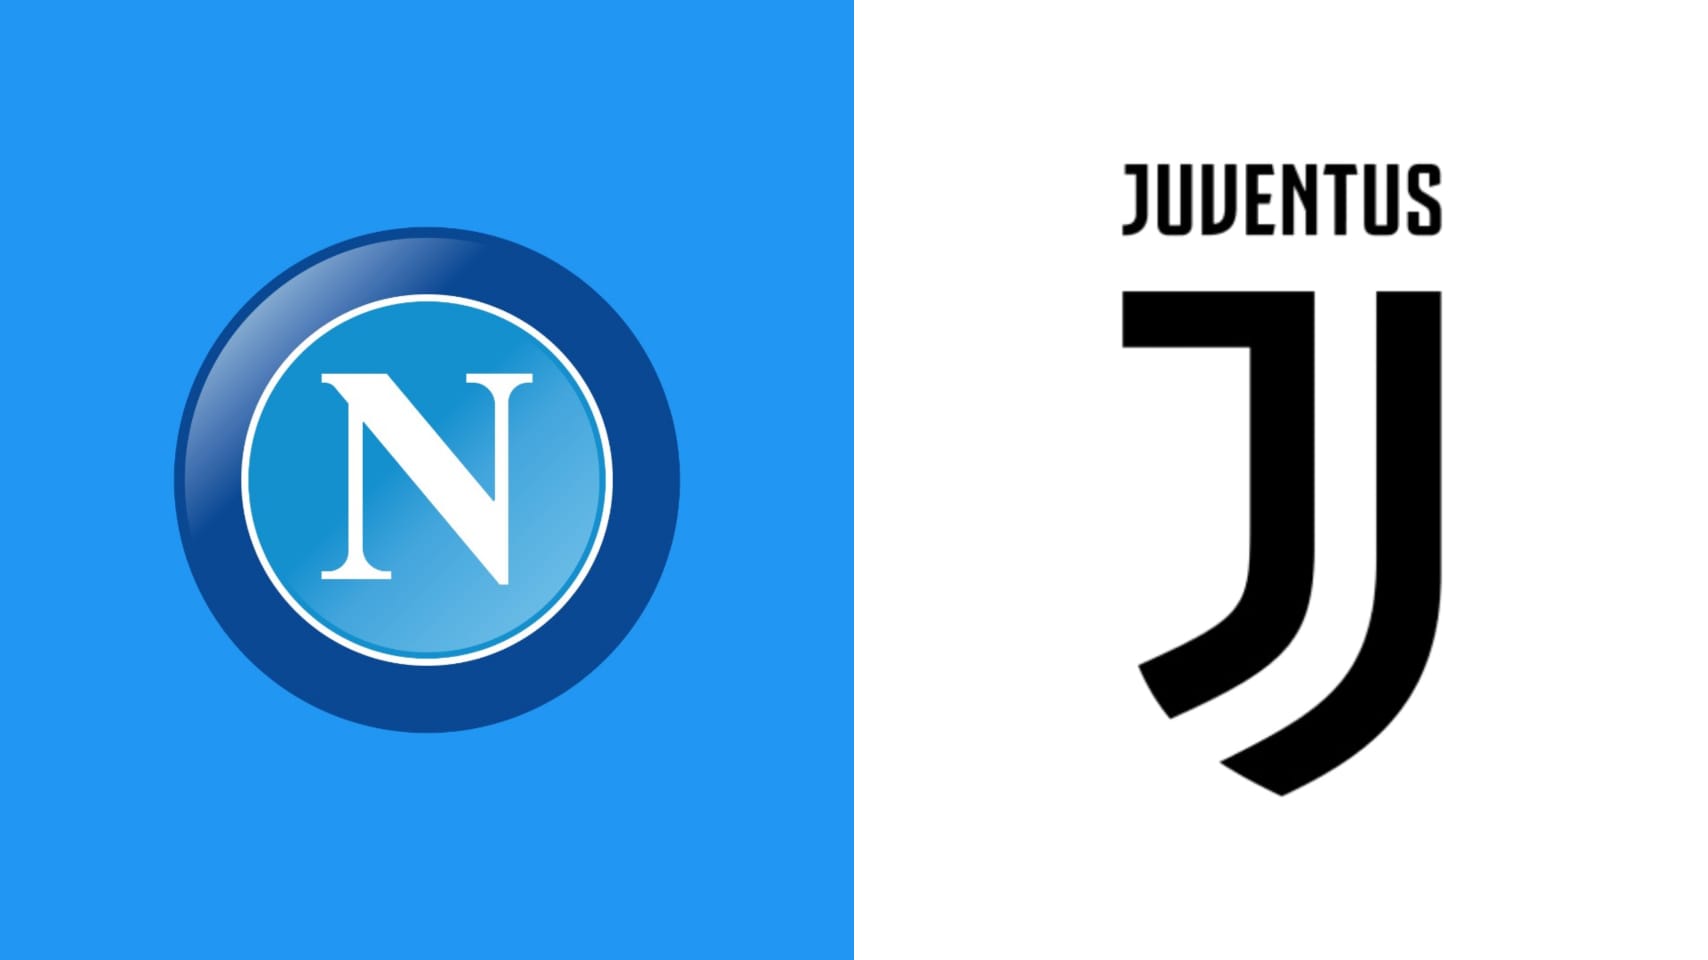 Les logos de Naples et de la Juventus